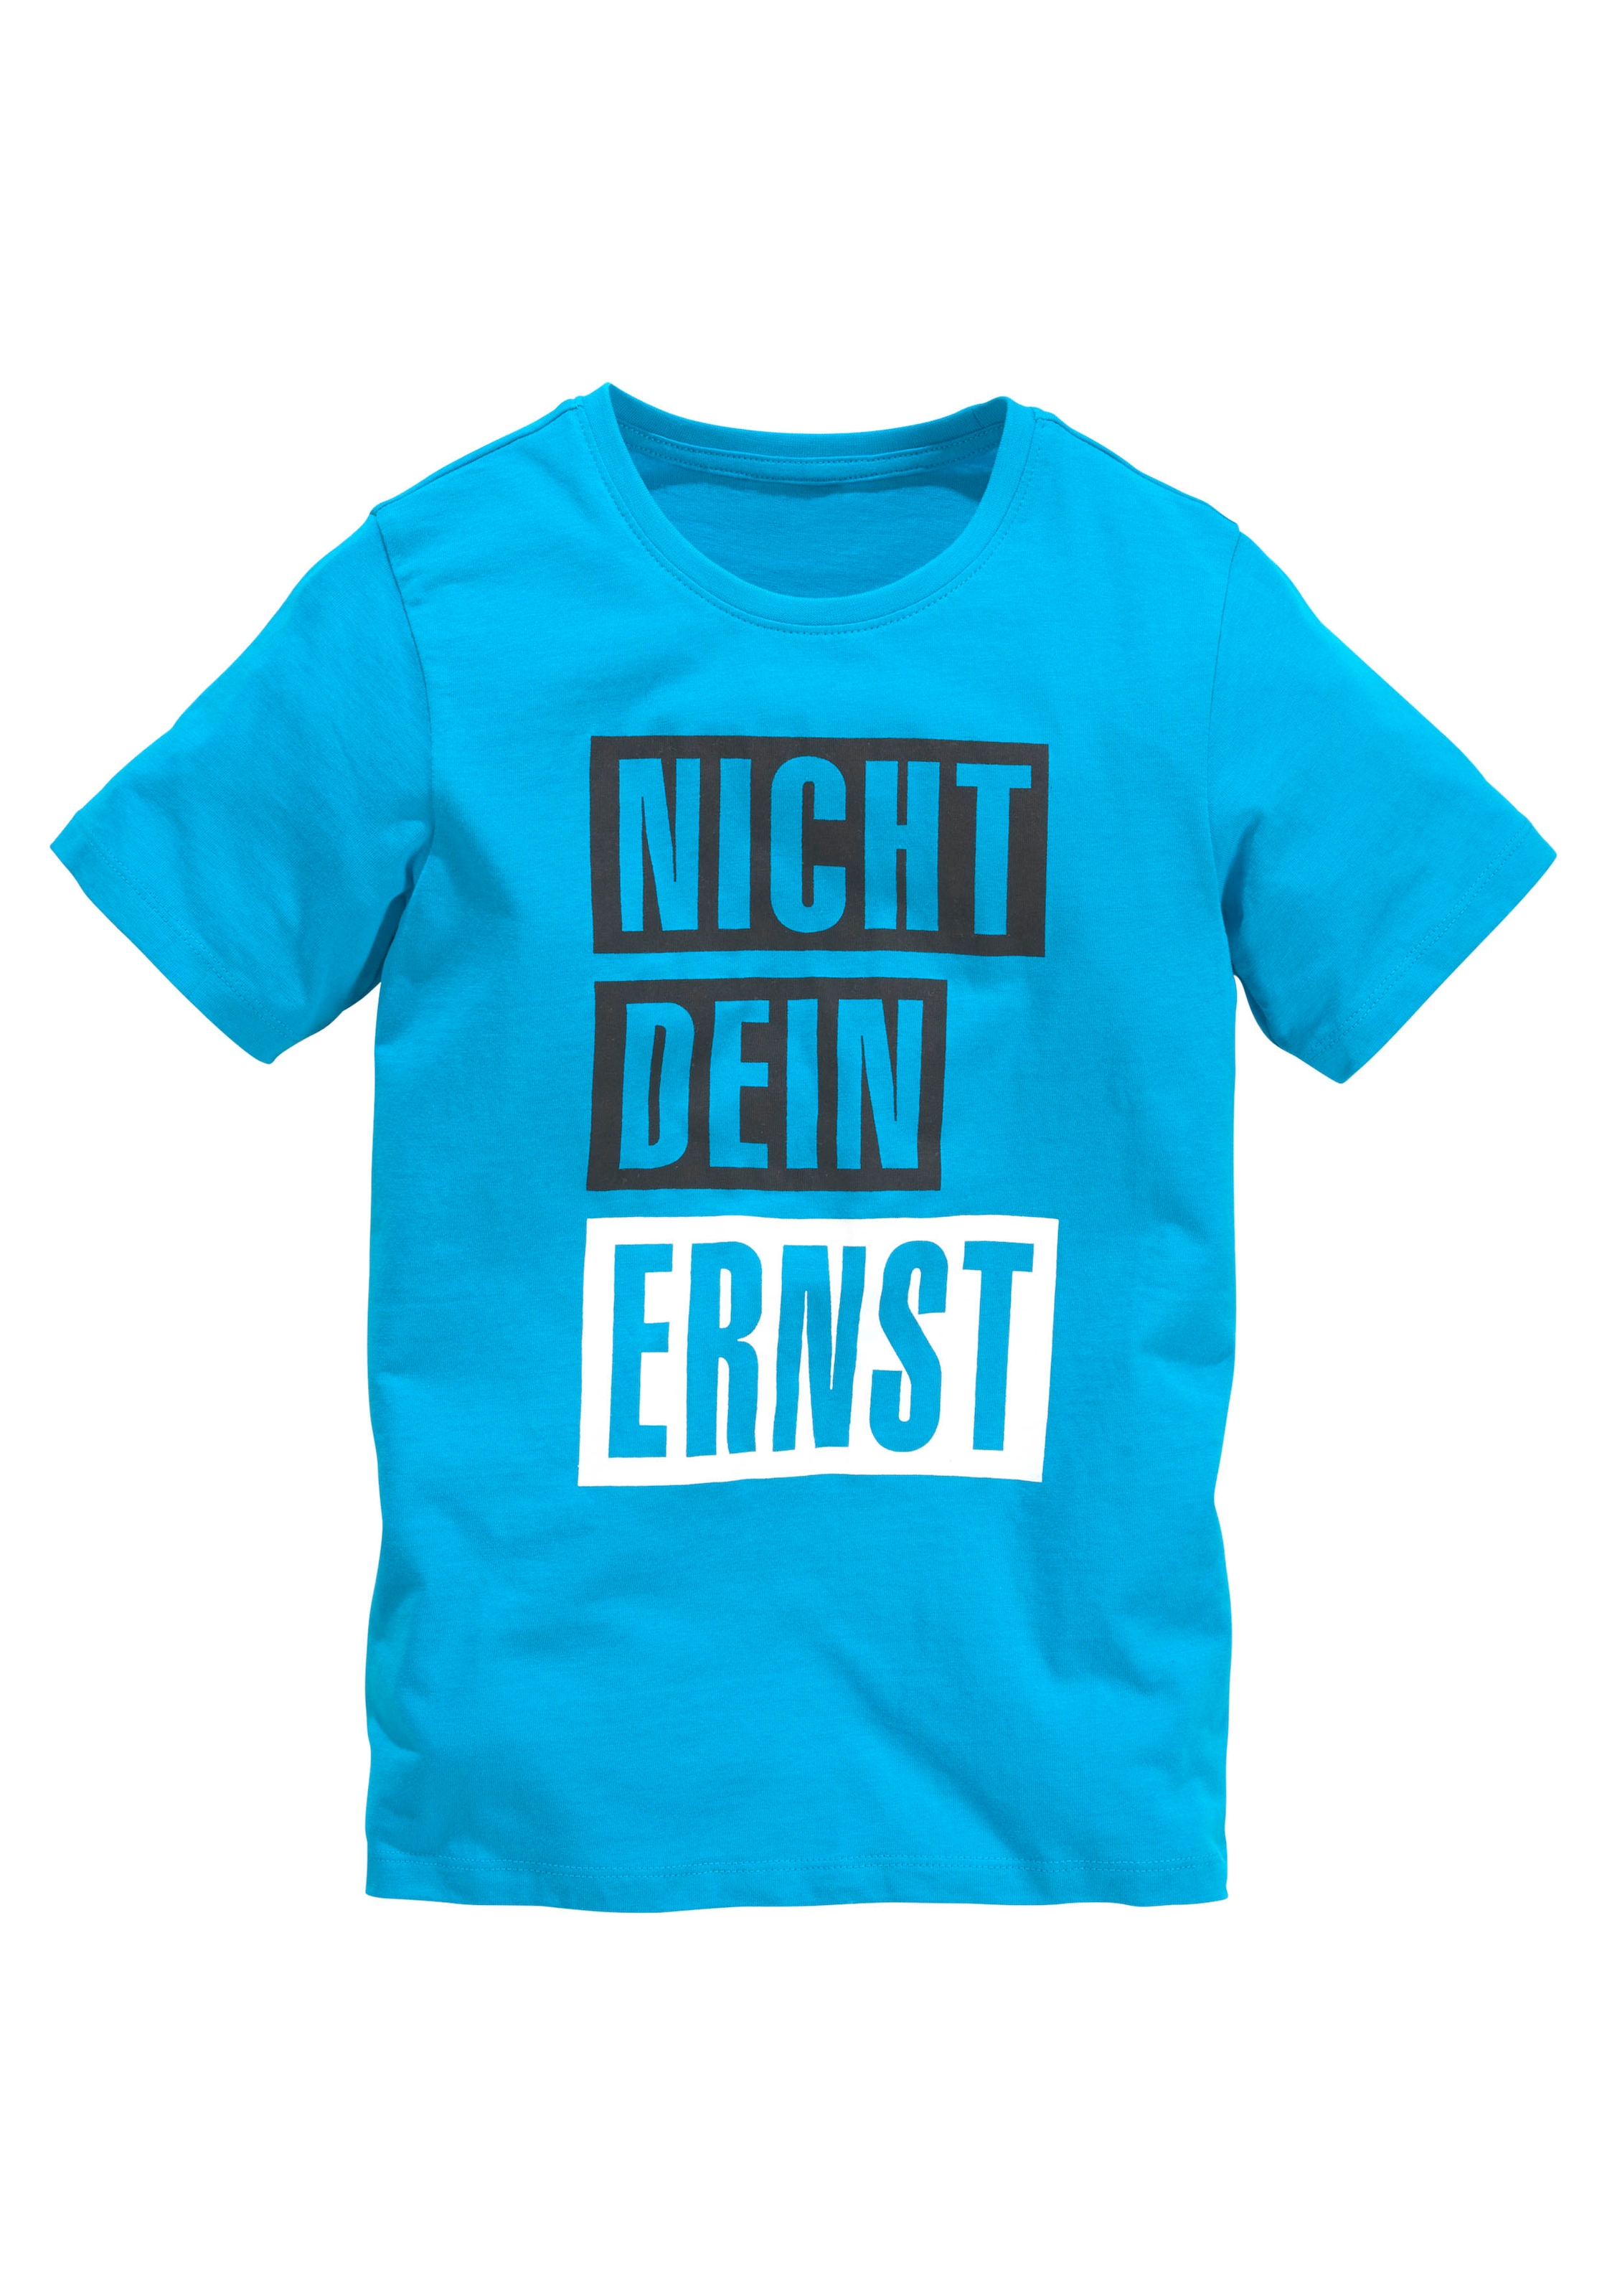 Statement-Shirts online kaufen OTTO | Österreich